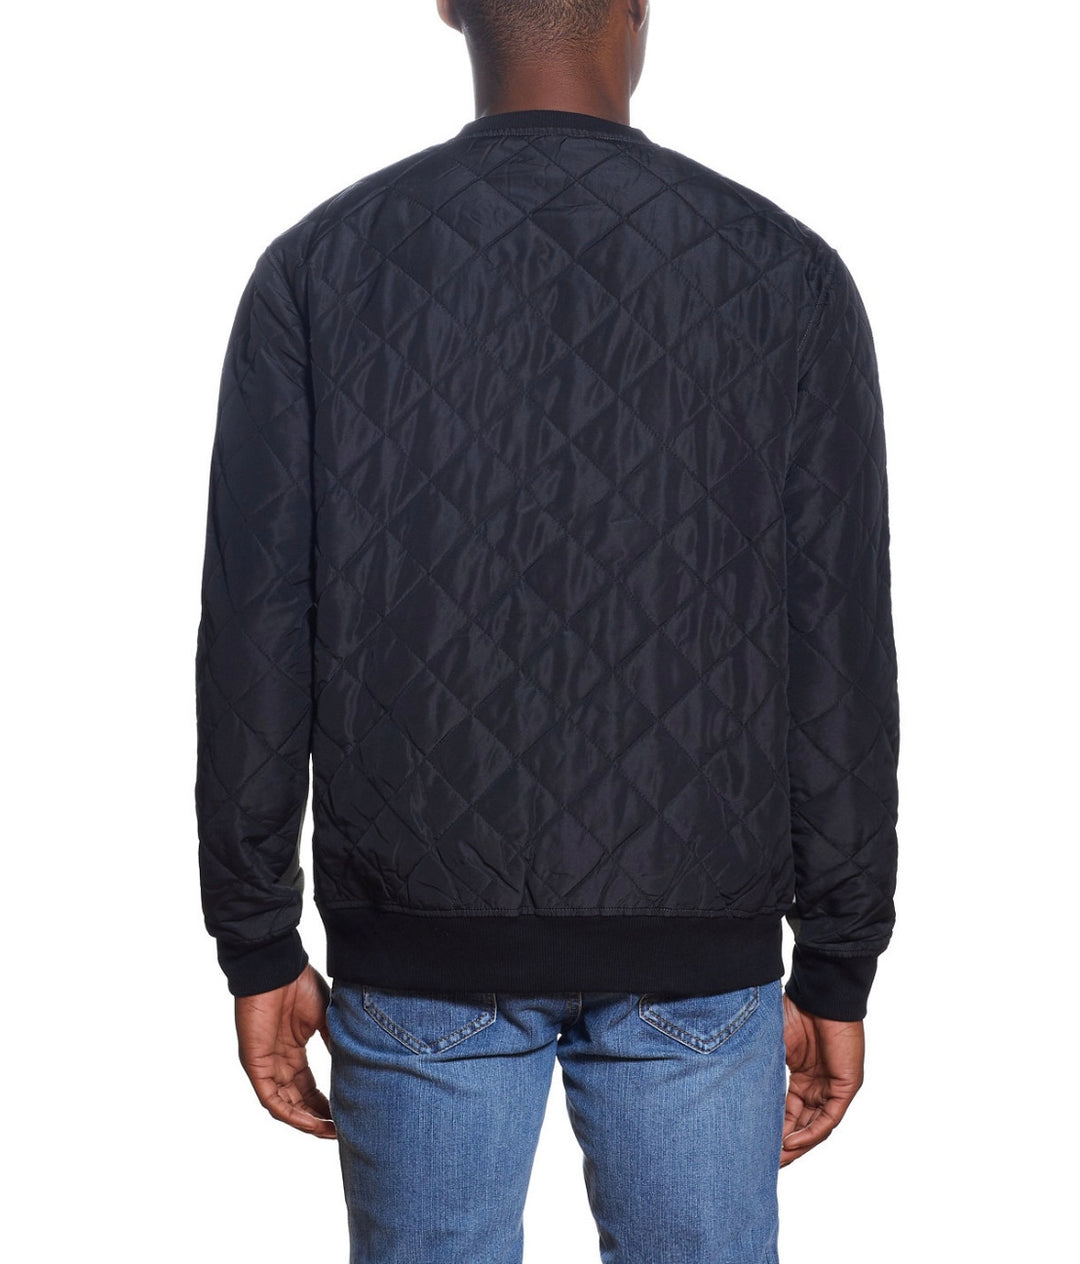 Weatherproof Vintage Men's Quilted Mix Media Sweatshirt Rosin Size L